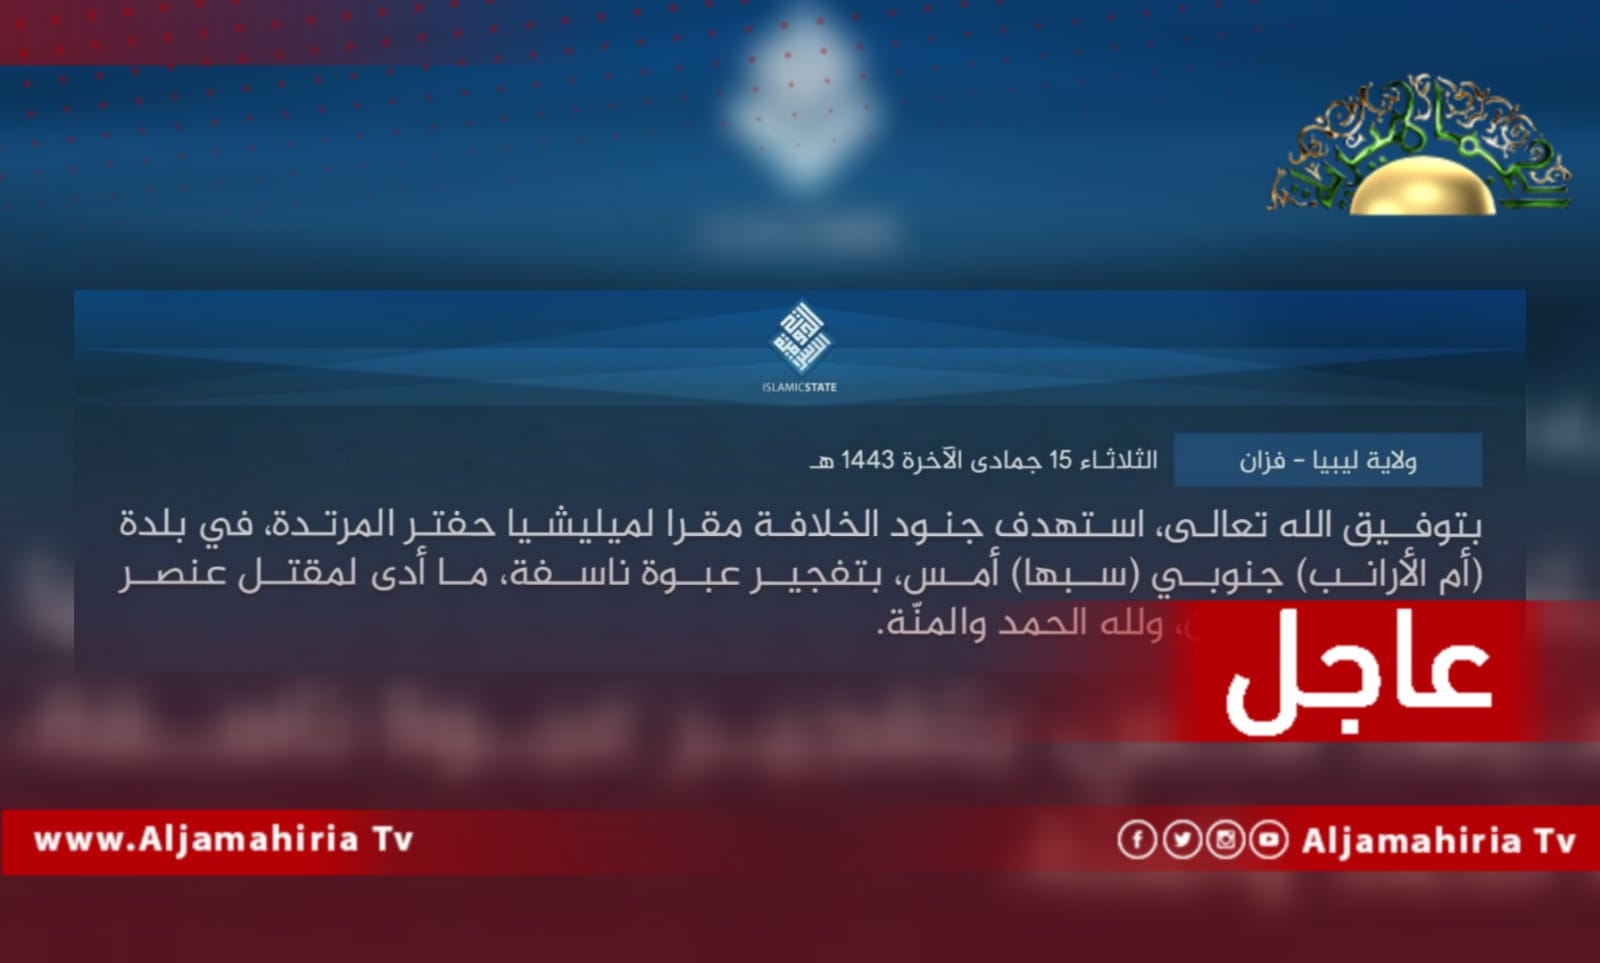 عاجل// تنظيم داعش الإرهابي استهداف مقر قوات الكرامة أسفر عن مقتل شخص وإصابة اثنين آخرين